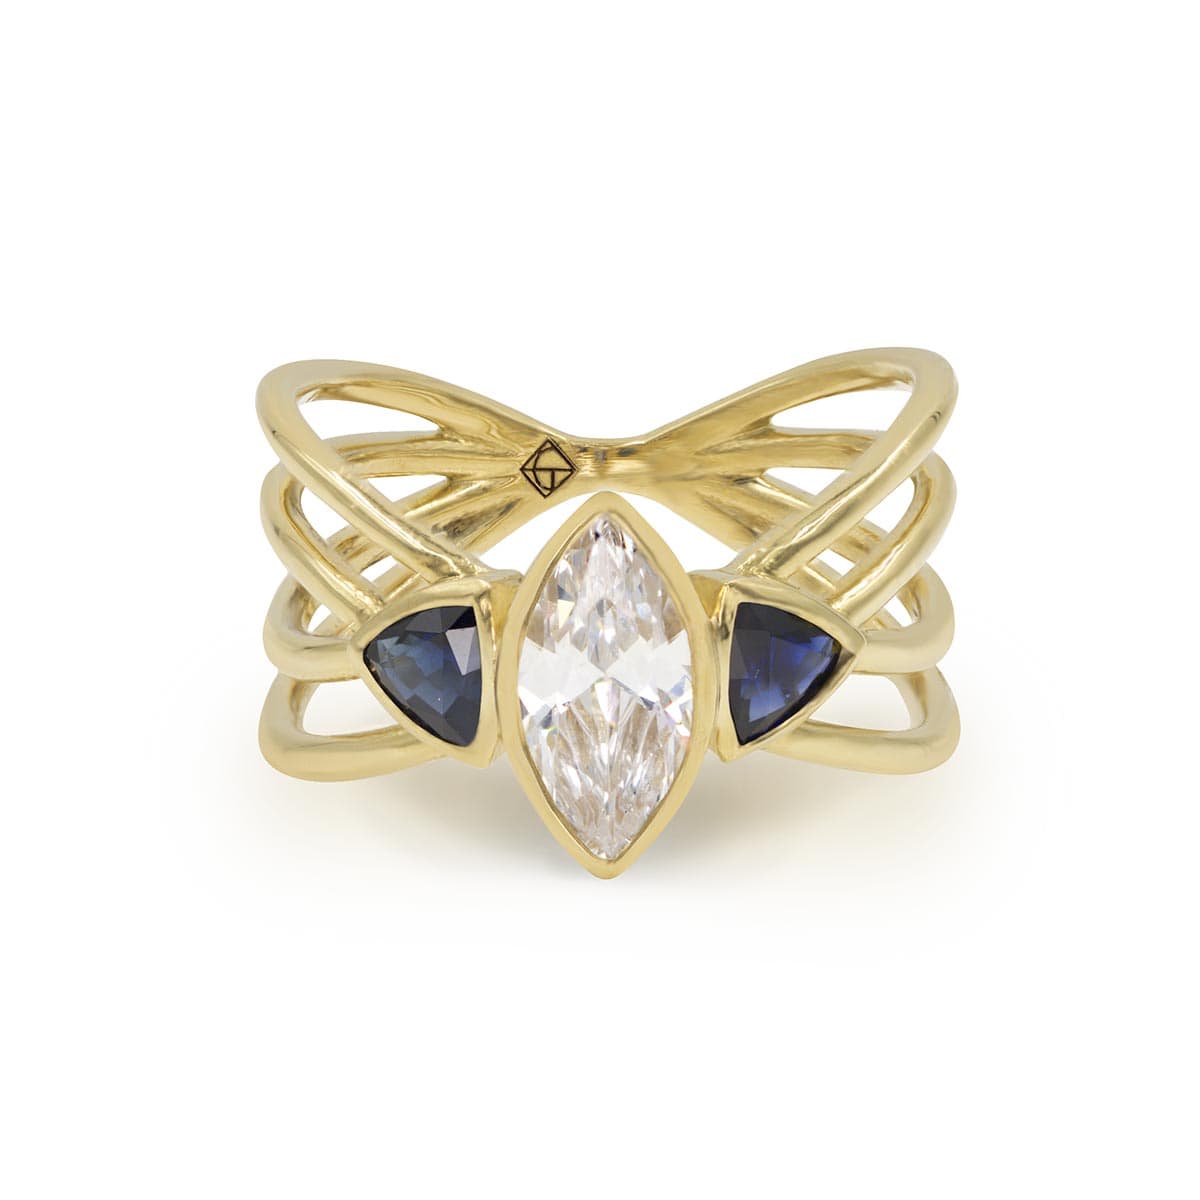 Aphrodite - Unique Marquise Diamond Engagement Ring